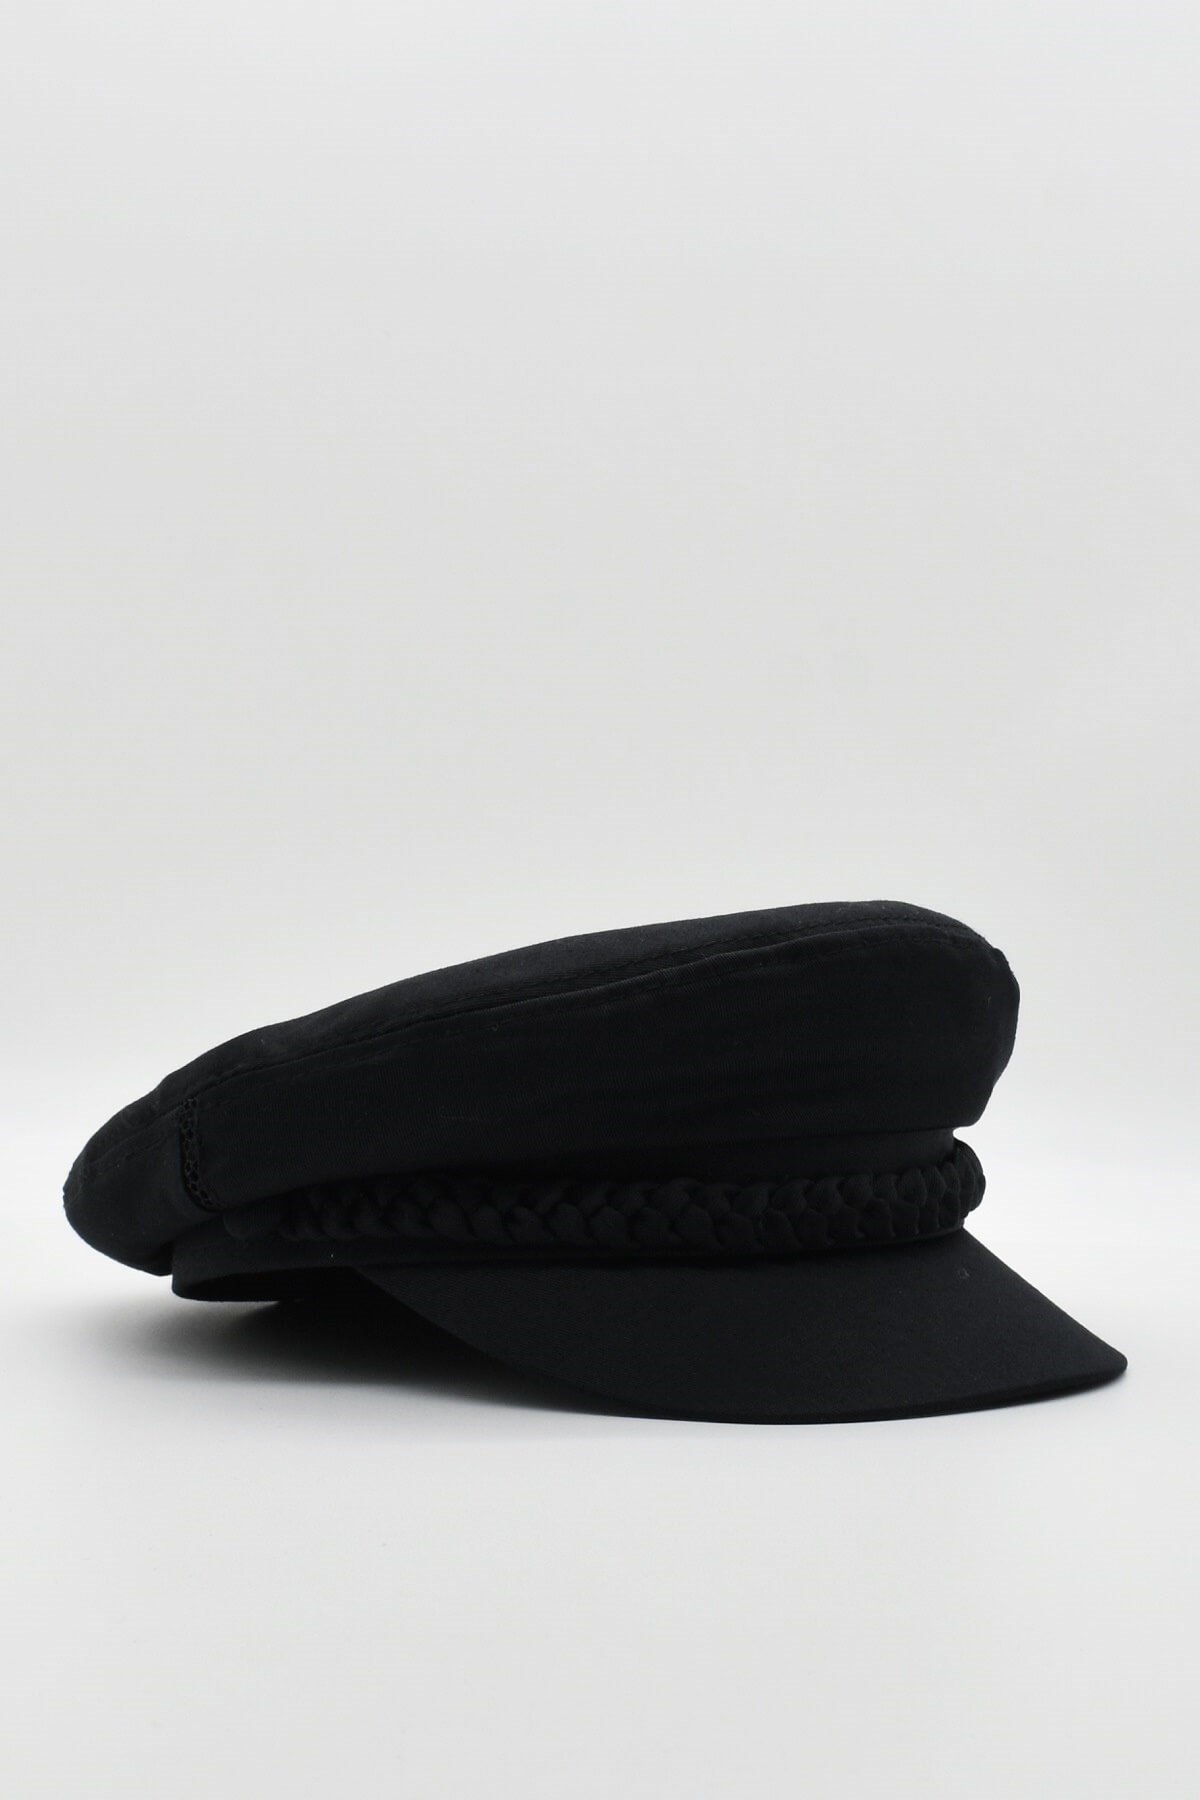 Külah Kadın Kaptan Şapka Yazlık Baker Boy Cap - Siyah KLH0570